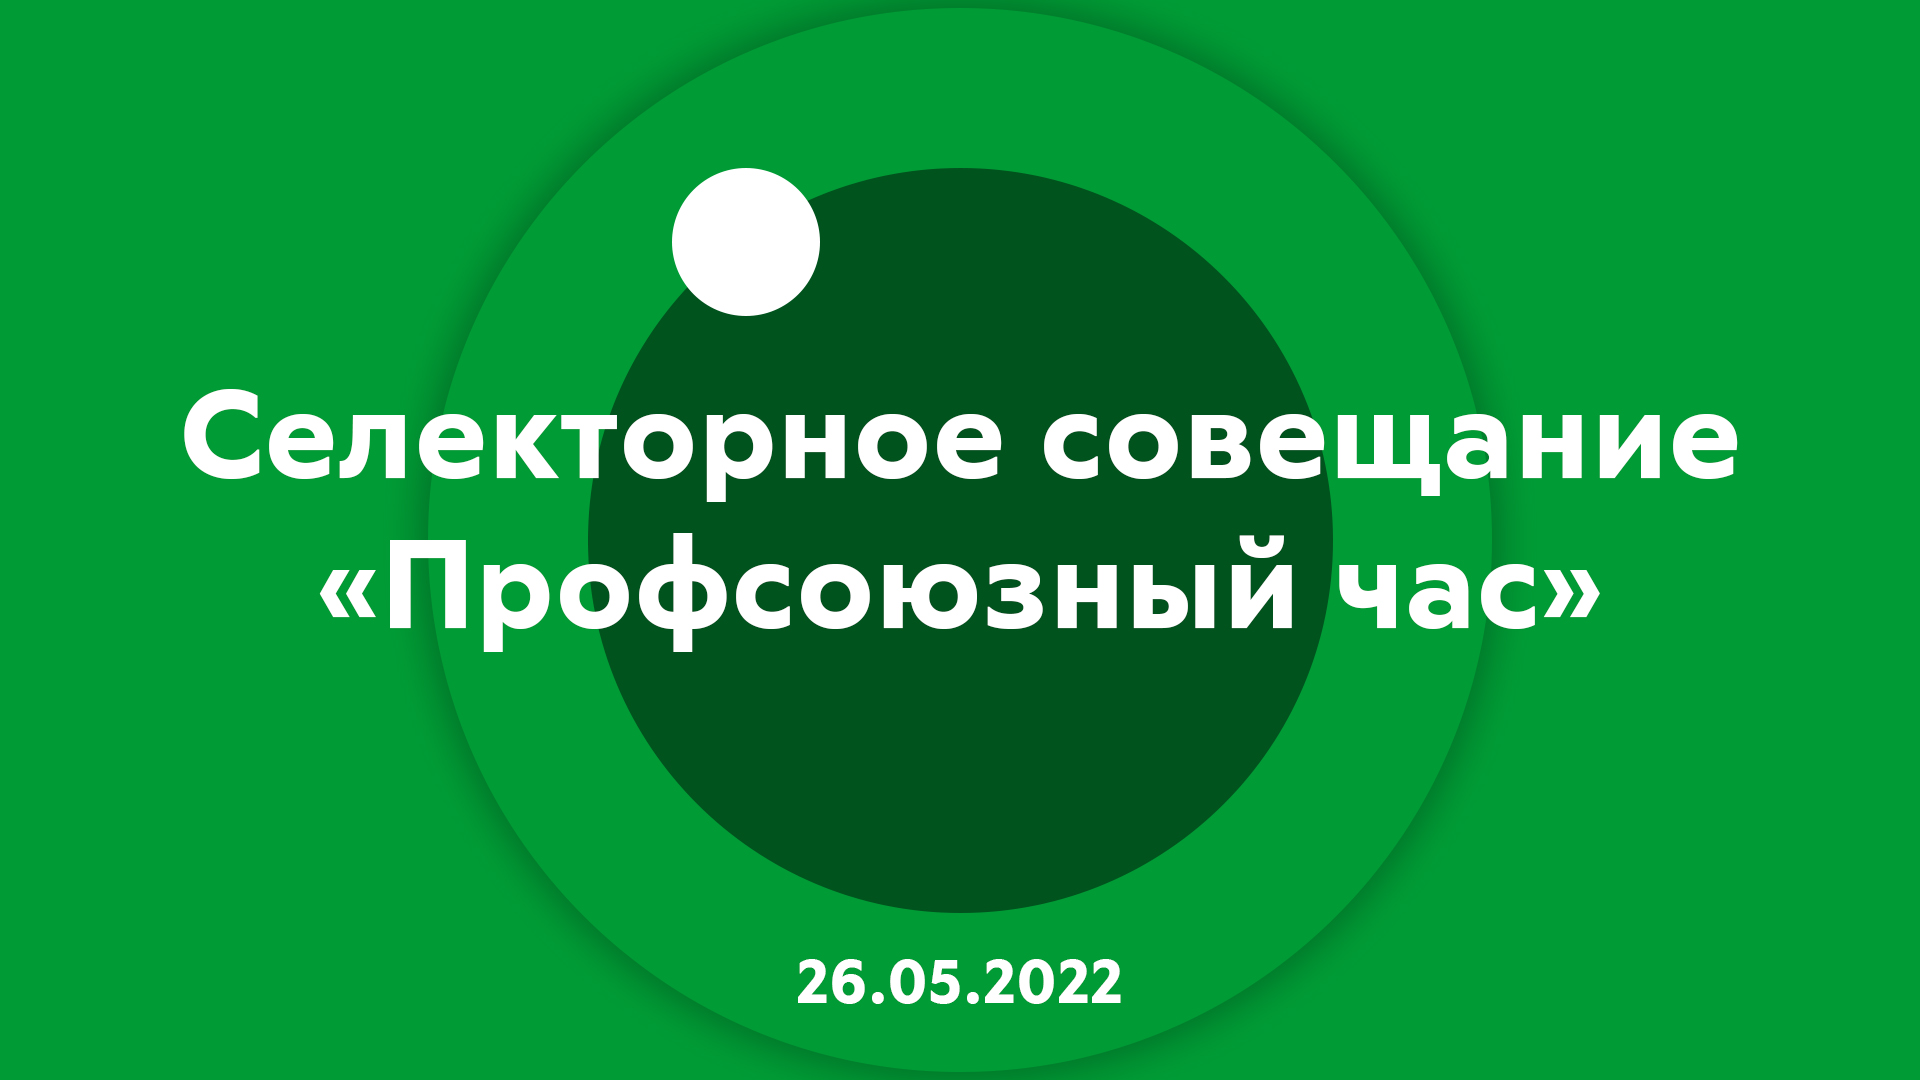 Селекторное совещание "Профсоюзный час" 26.05.2022